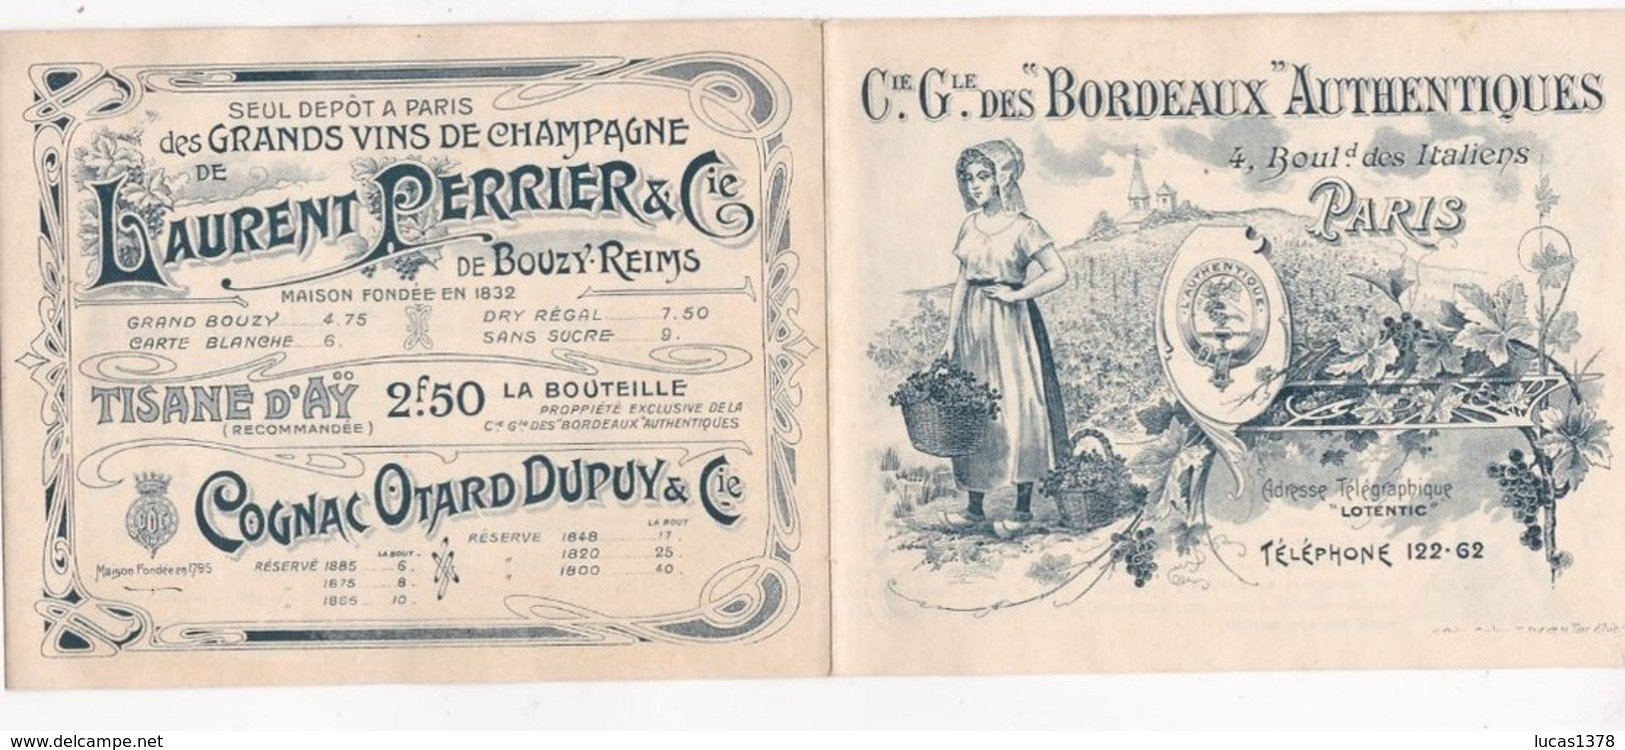 EXCEPTIONNEL TARIFS GRANDS CRUS BORDEAUX 1877 A 1896 !!! CIE GENERALE DES BORDEAUX AUTHENTIQUES !! - Alcools